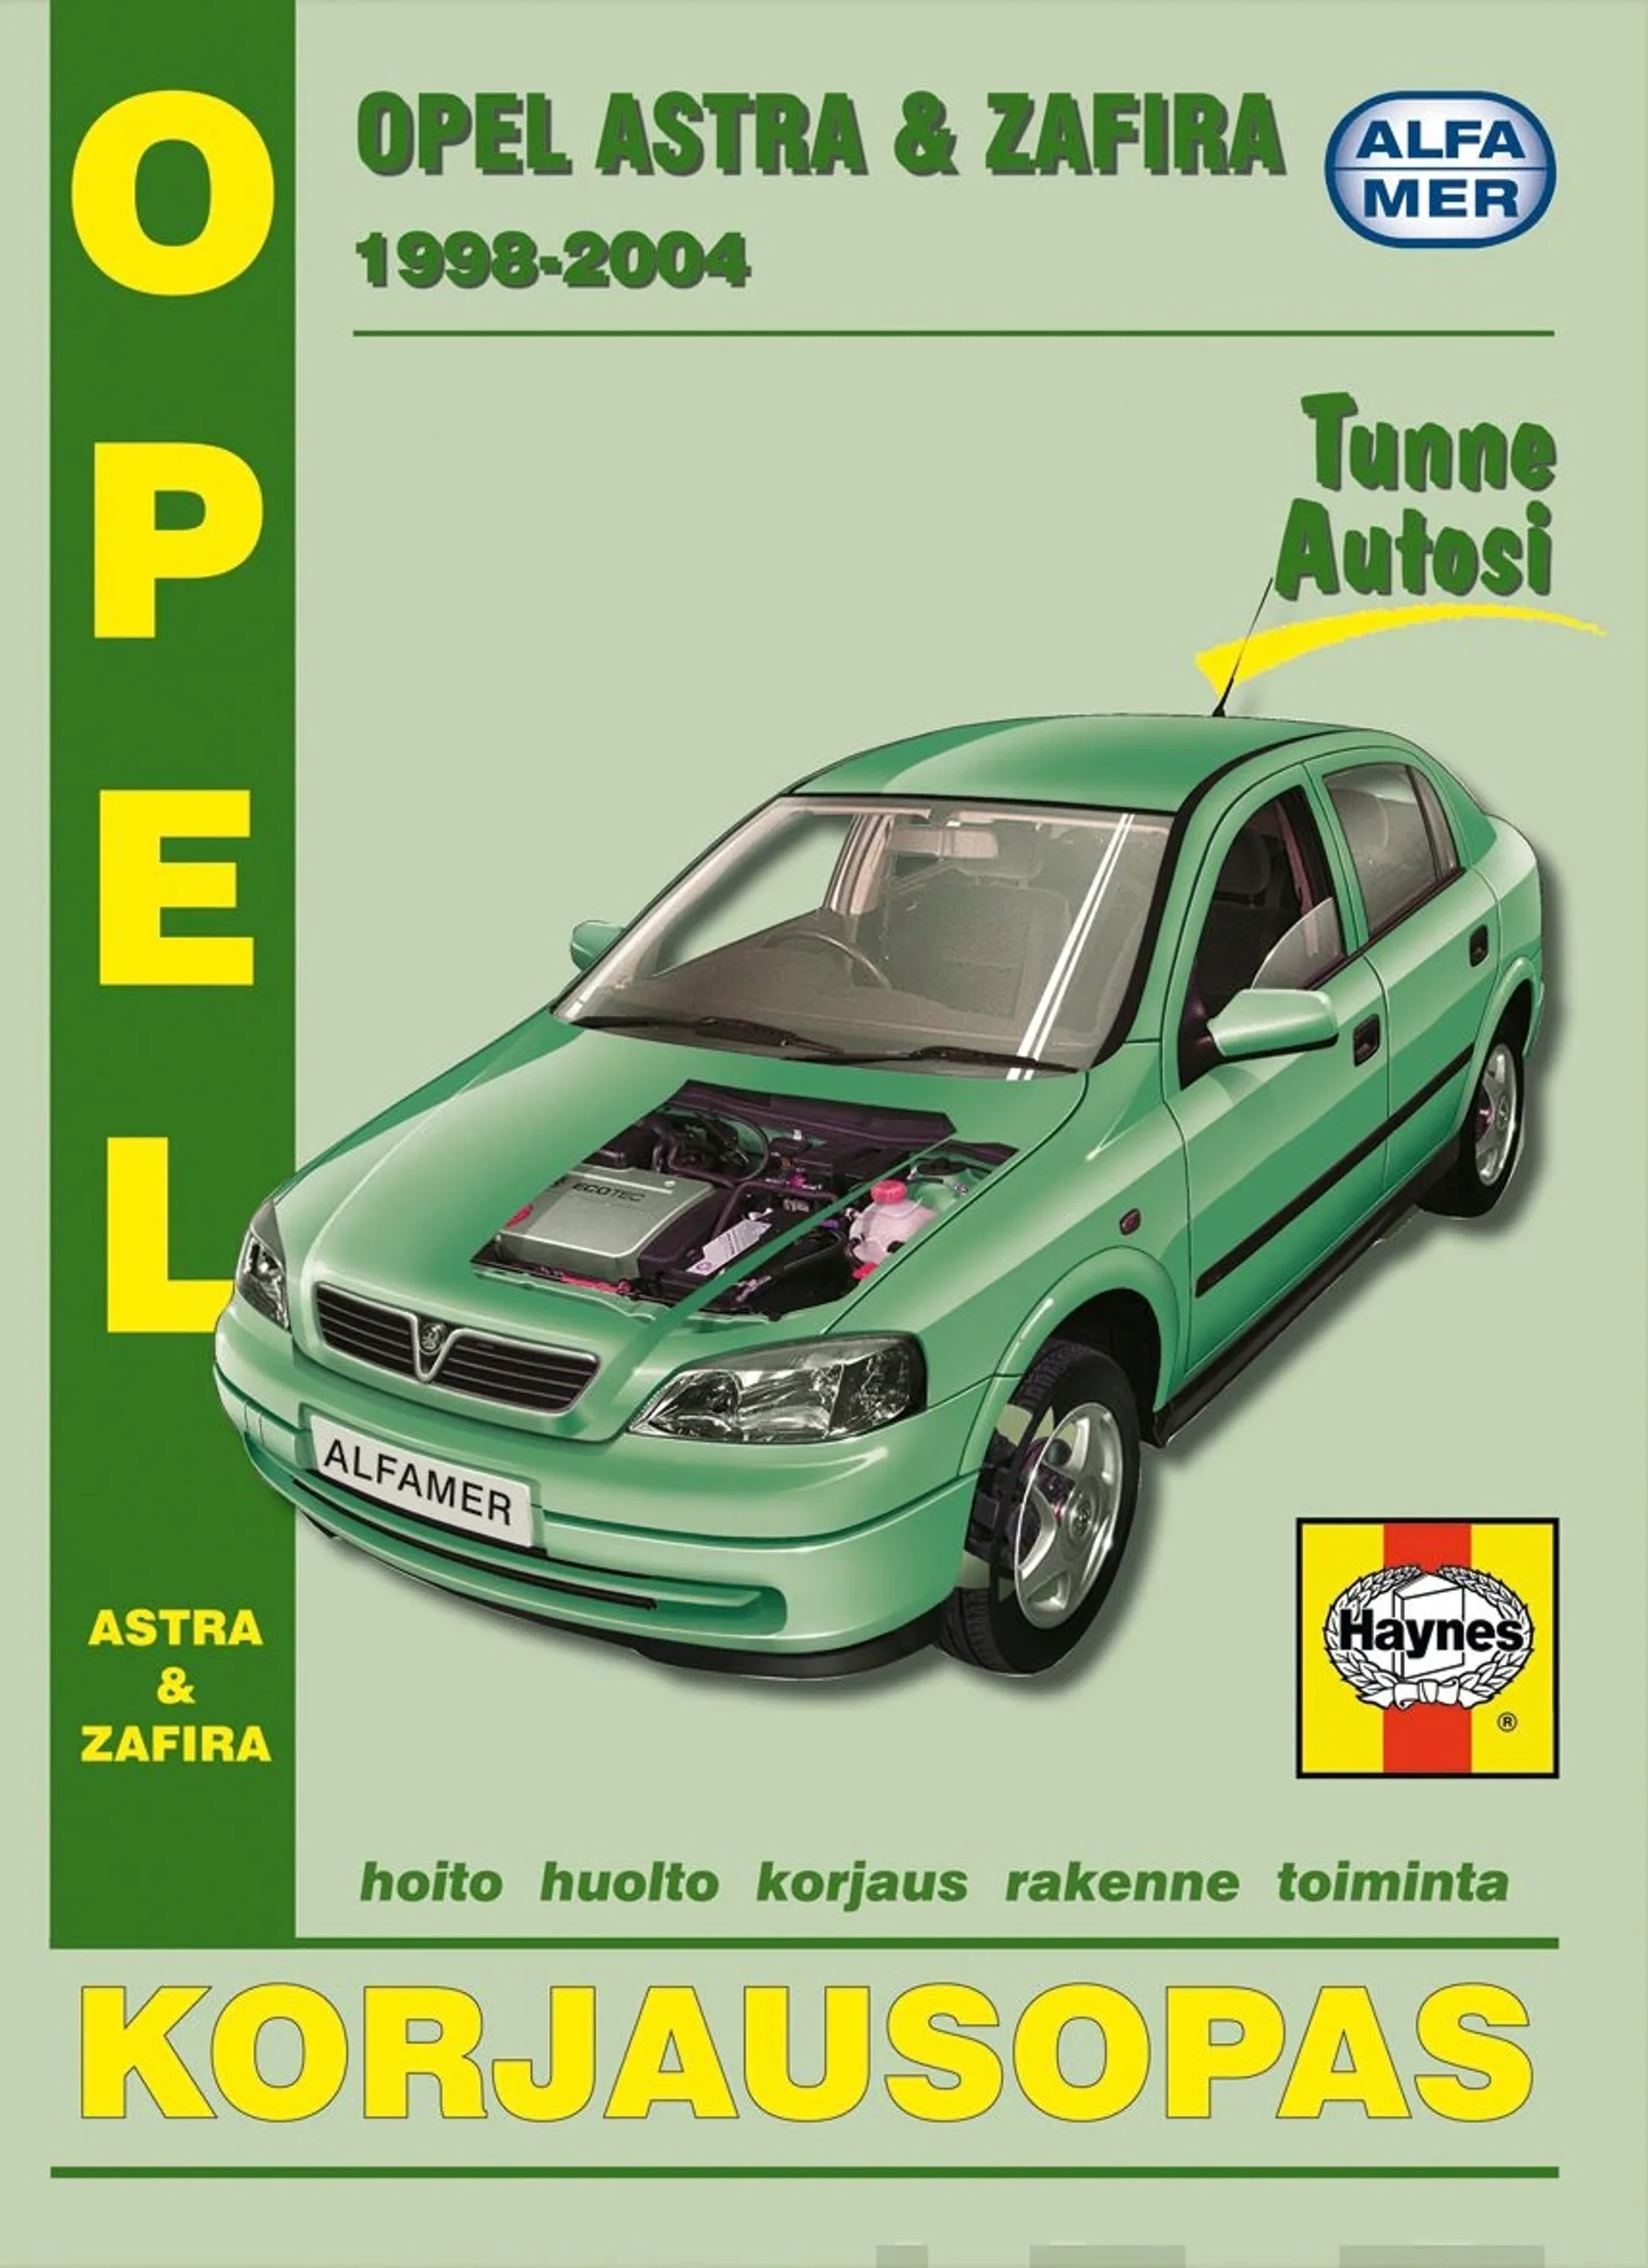 Mauno, Opel Astra & Zafira 1998-2004 - korjausopas